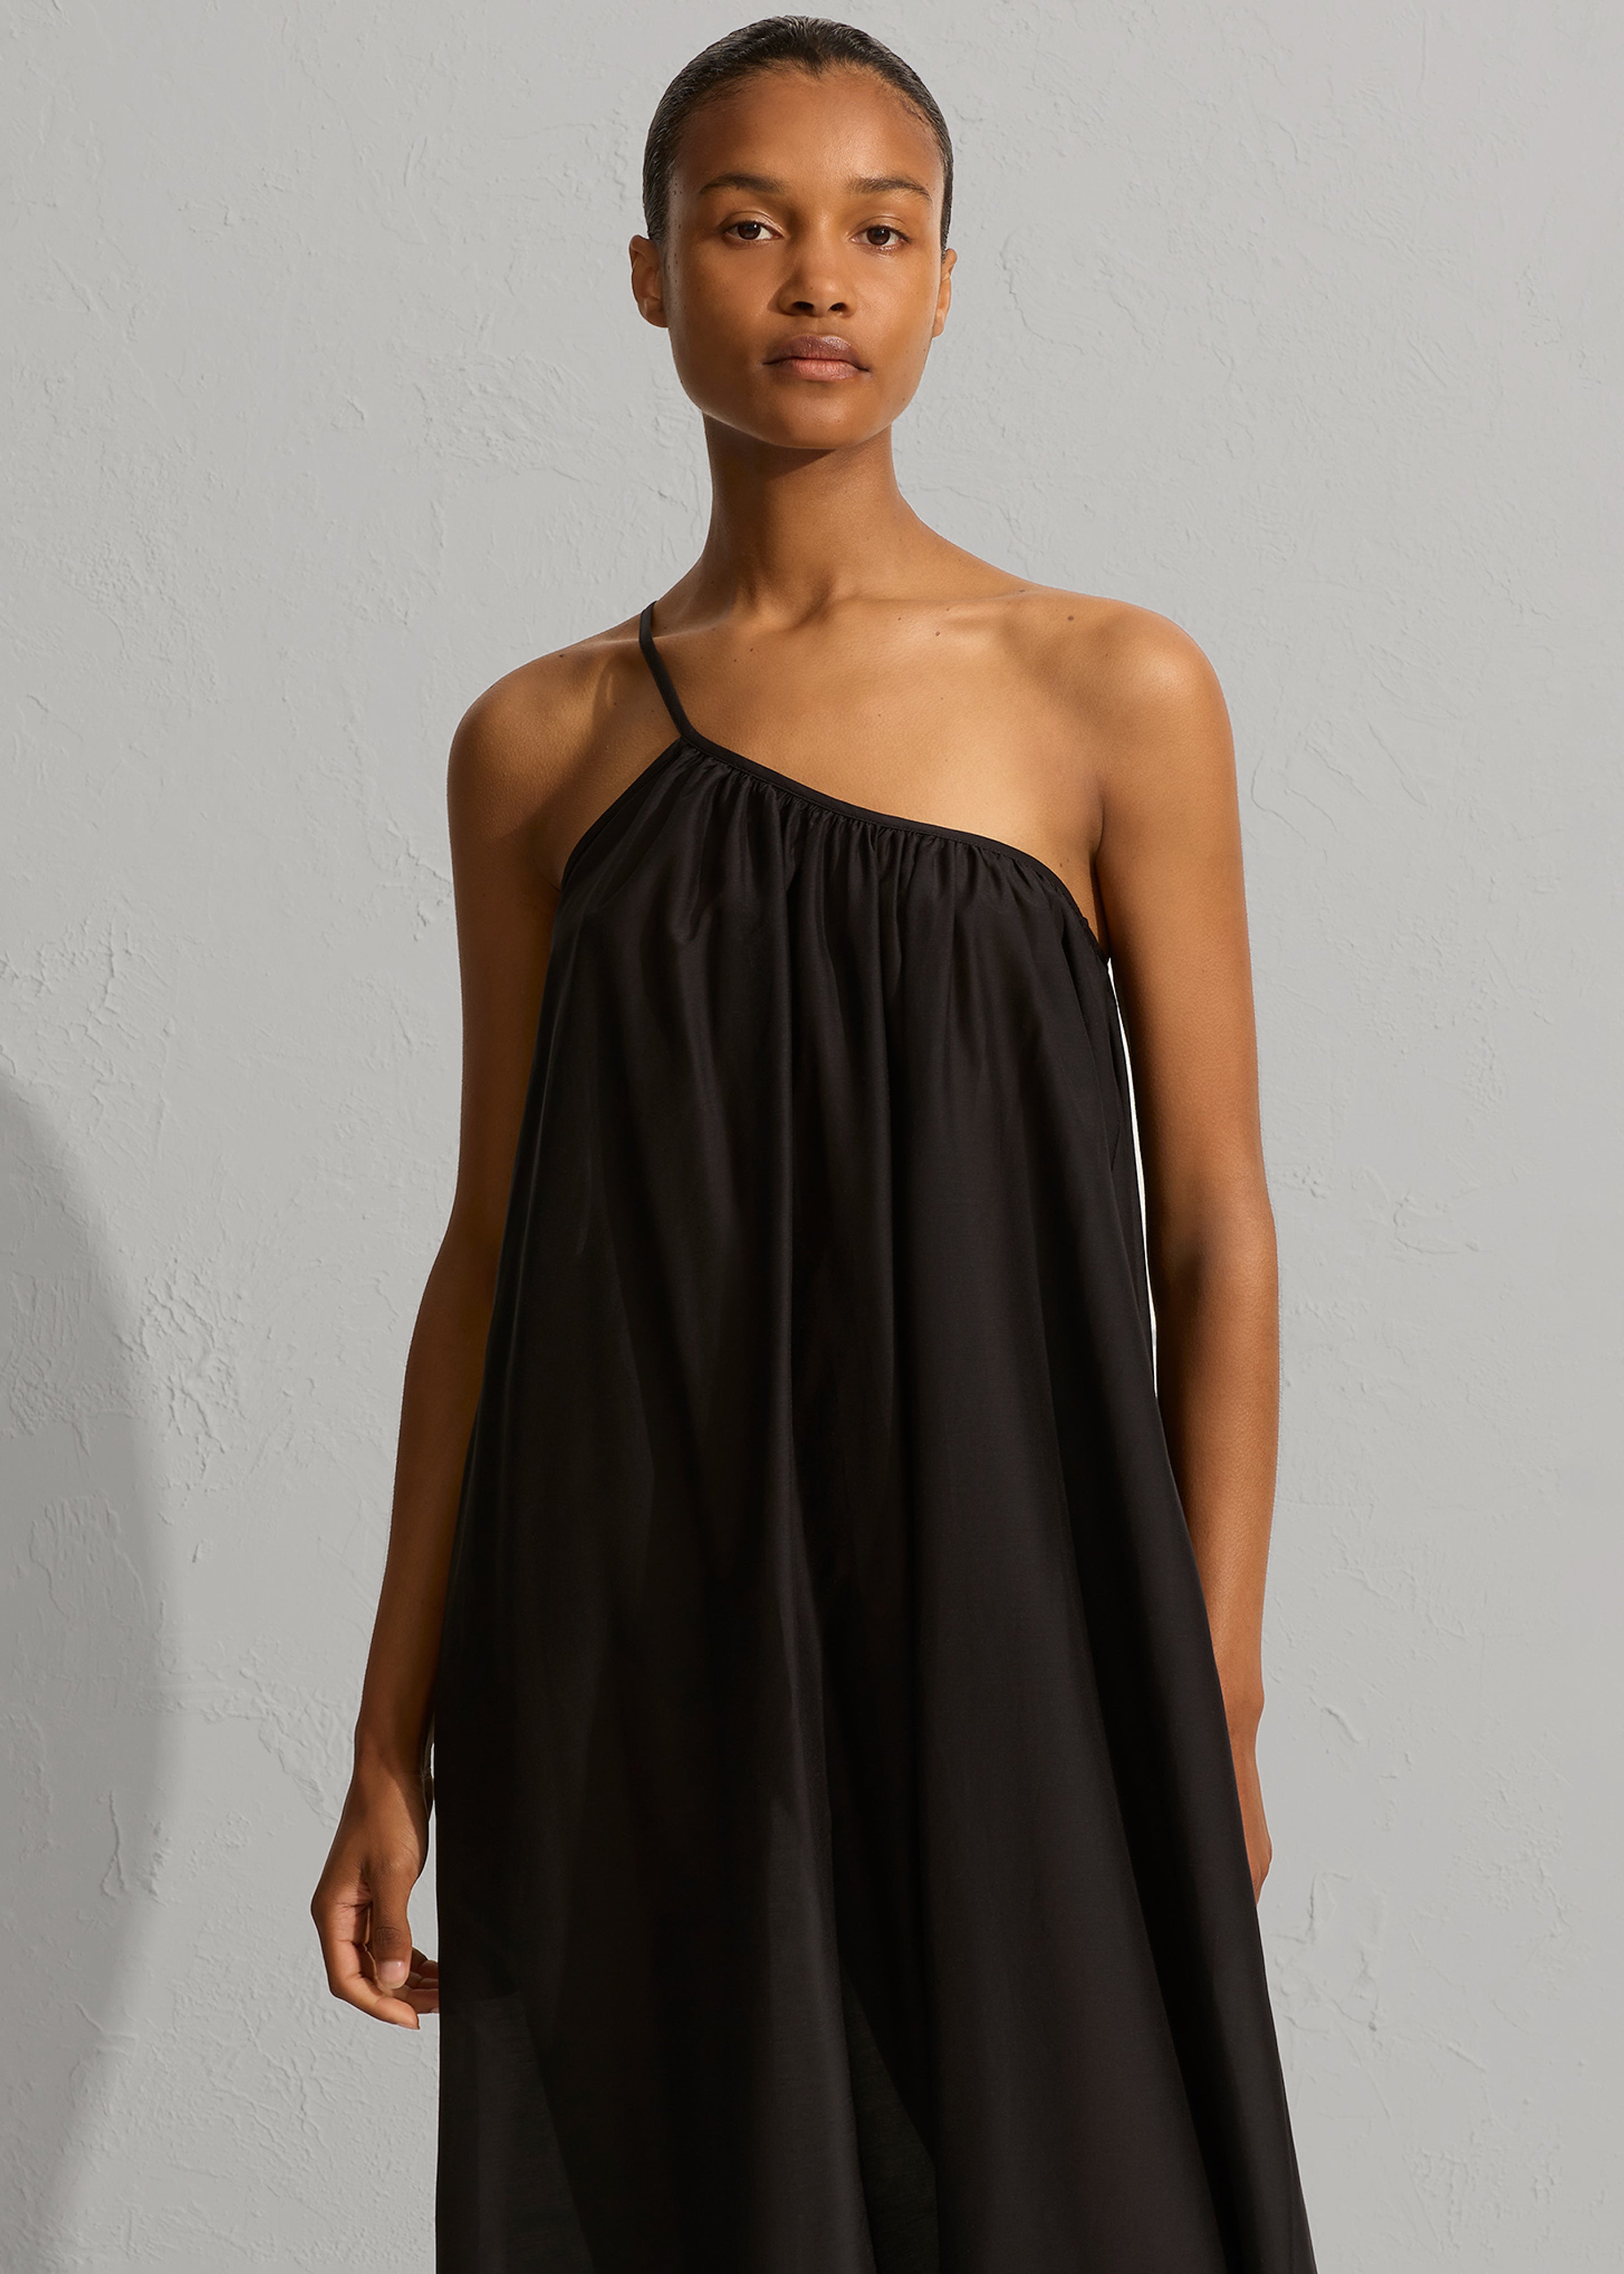 Matteau Voluminous One Shoulder Dress - Black - 2